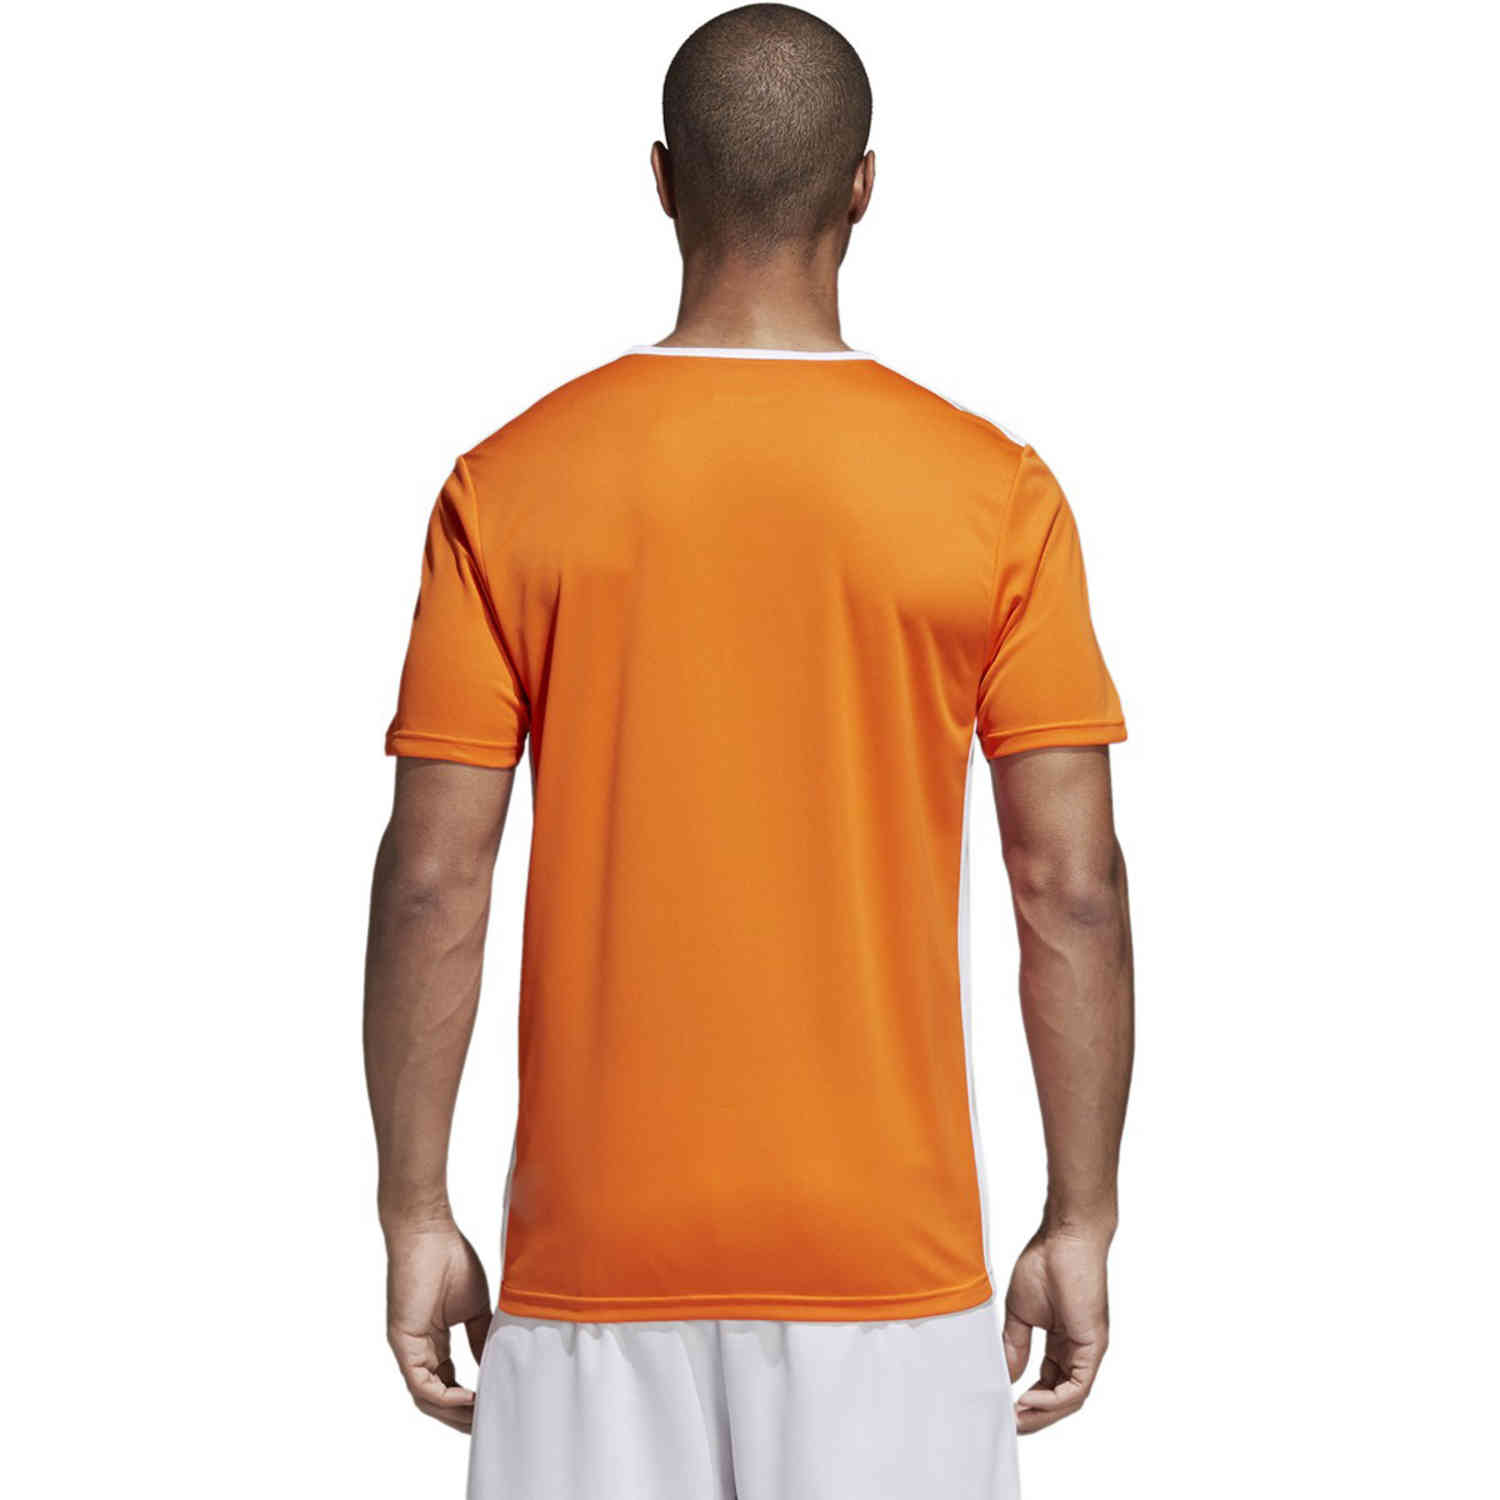 adidas Entrada 18 Jersey - Orange - SoccerPro